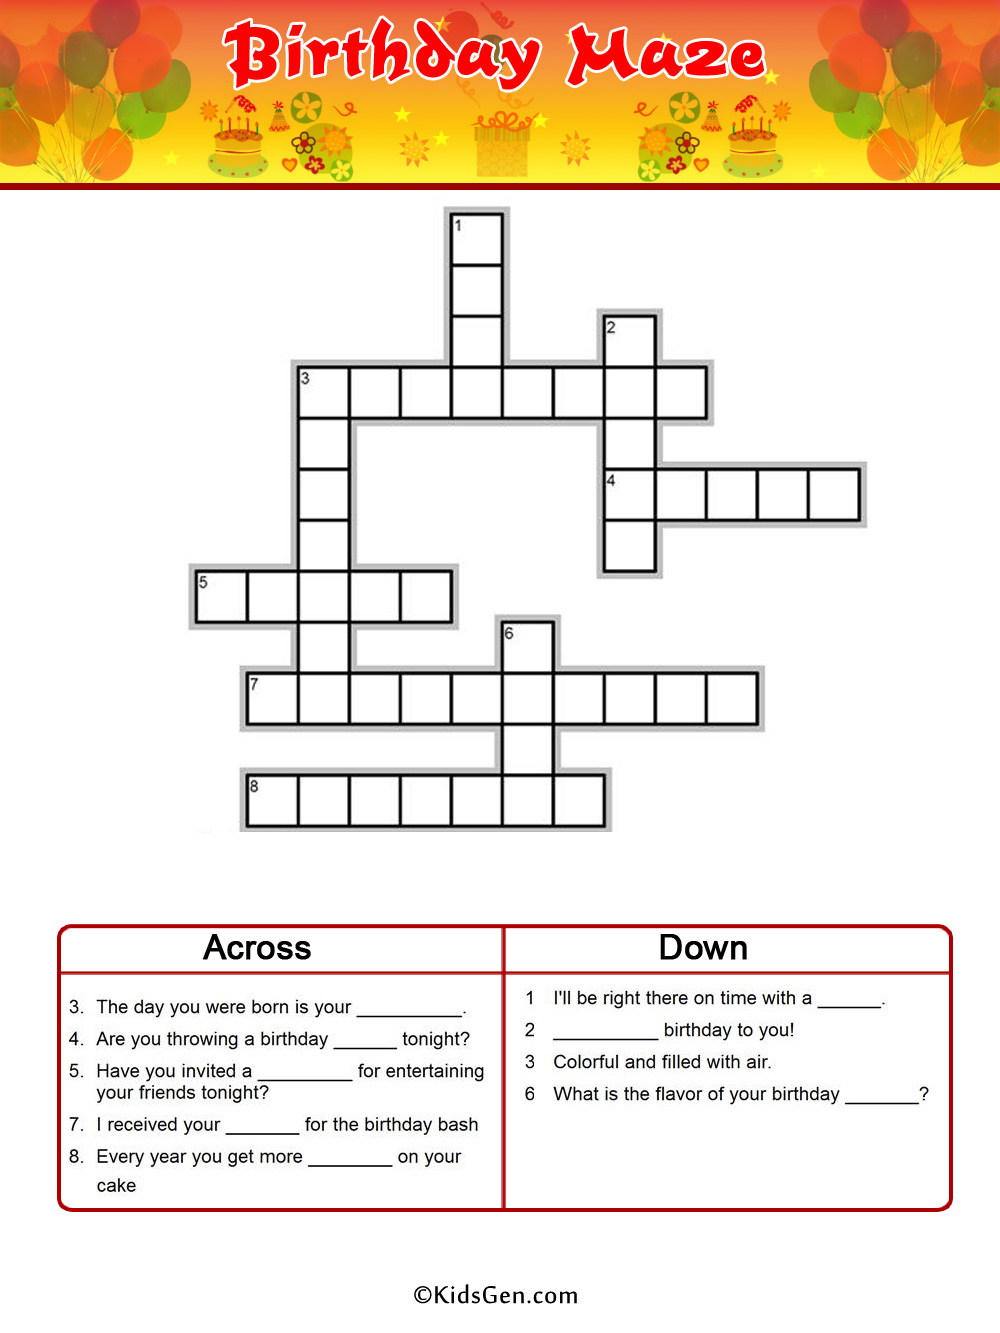 Birthday Crossword Puzzle Printable